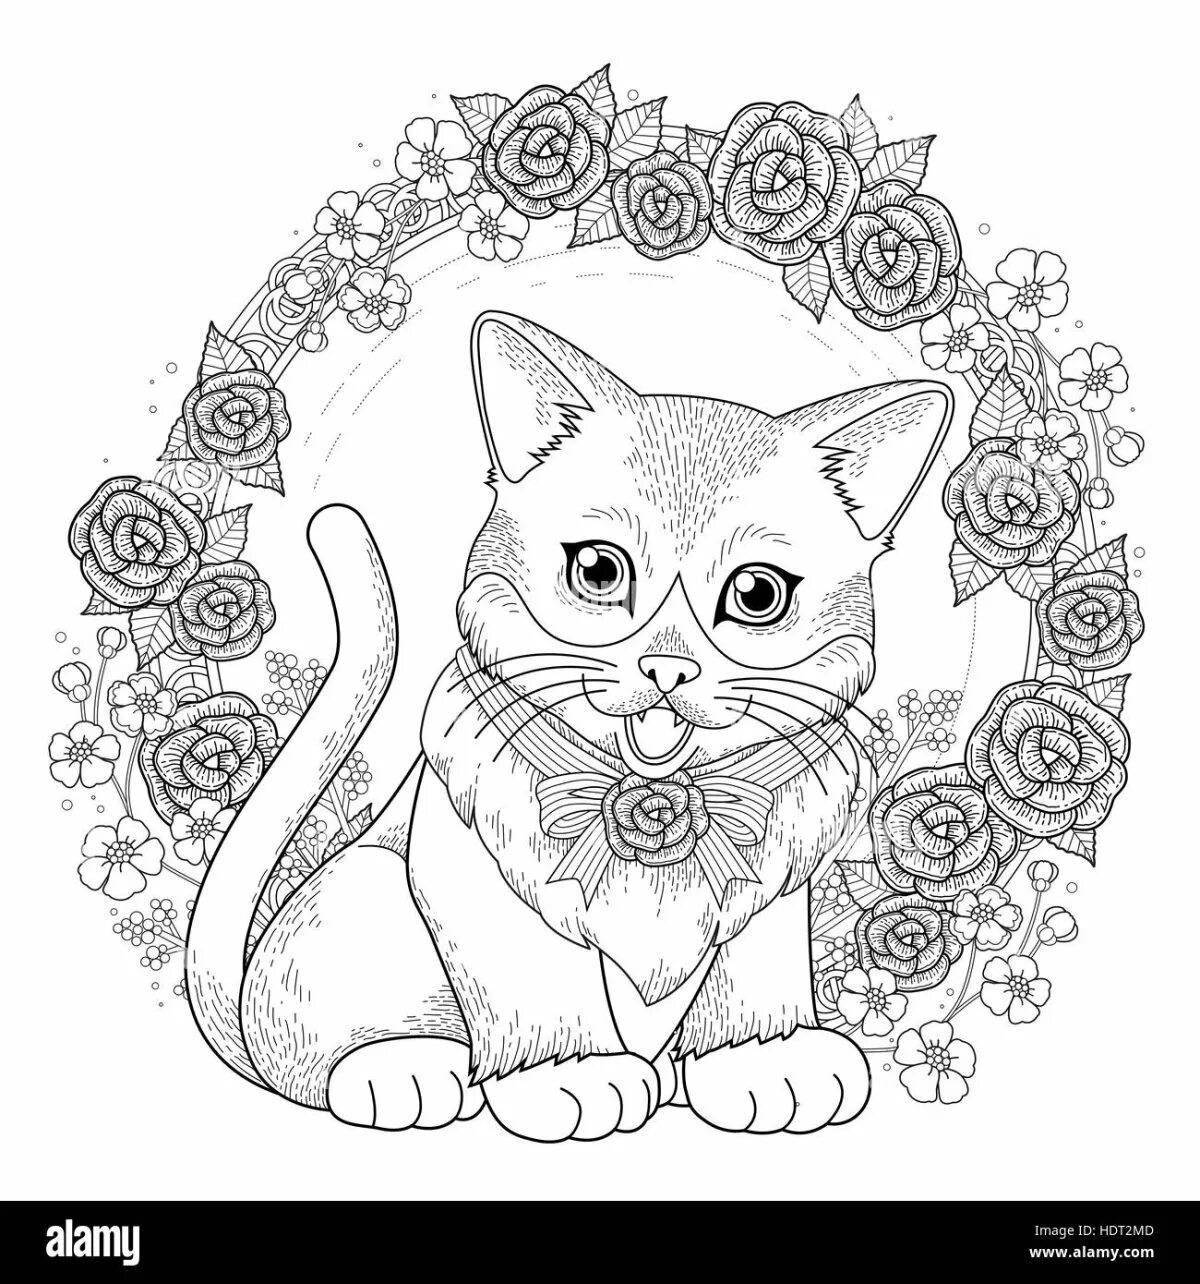 Adorable kitten coloring book